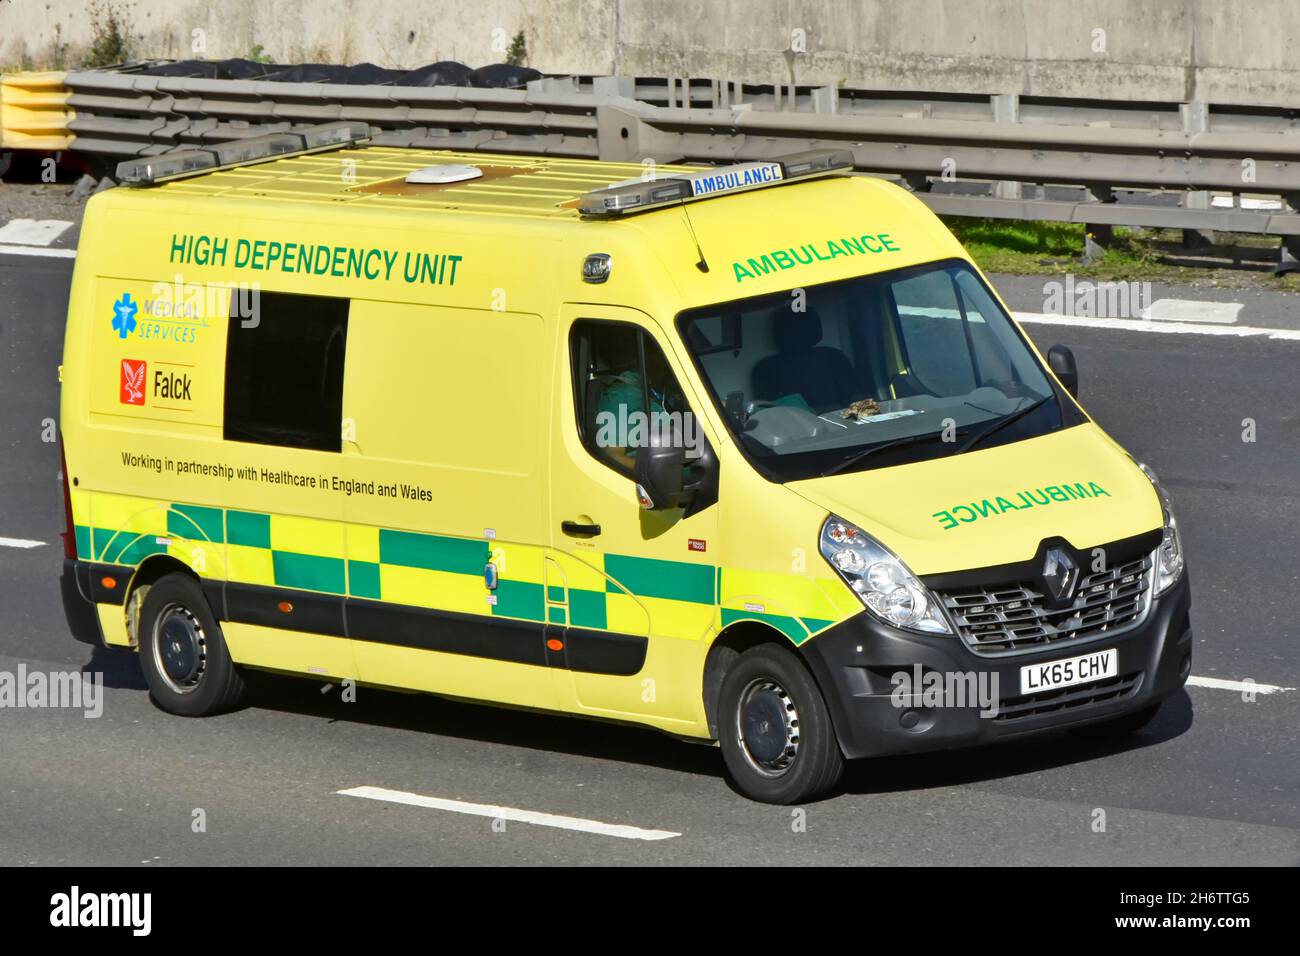 Vue rapprochée de face et de côté de l'unité Renault d'ambulance à dépendance élevée, exploitée par l'entreprise de soins de santé et de services médicaux de Falck, basée dans les pays nordiques, sur l'autoroute britannique Banque D'Images